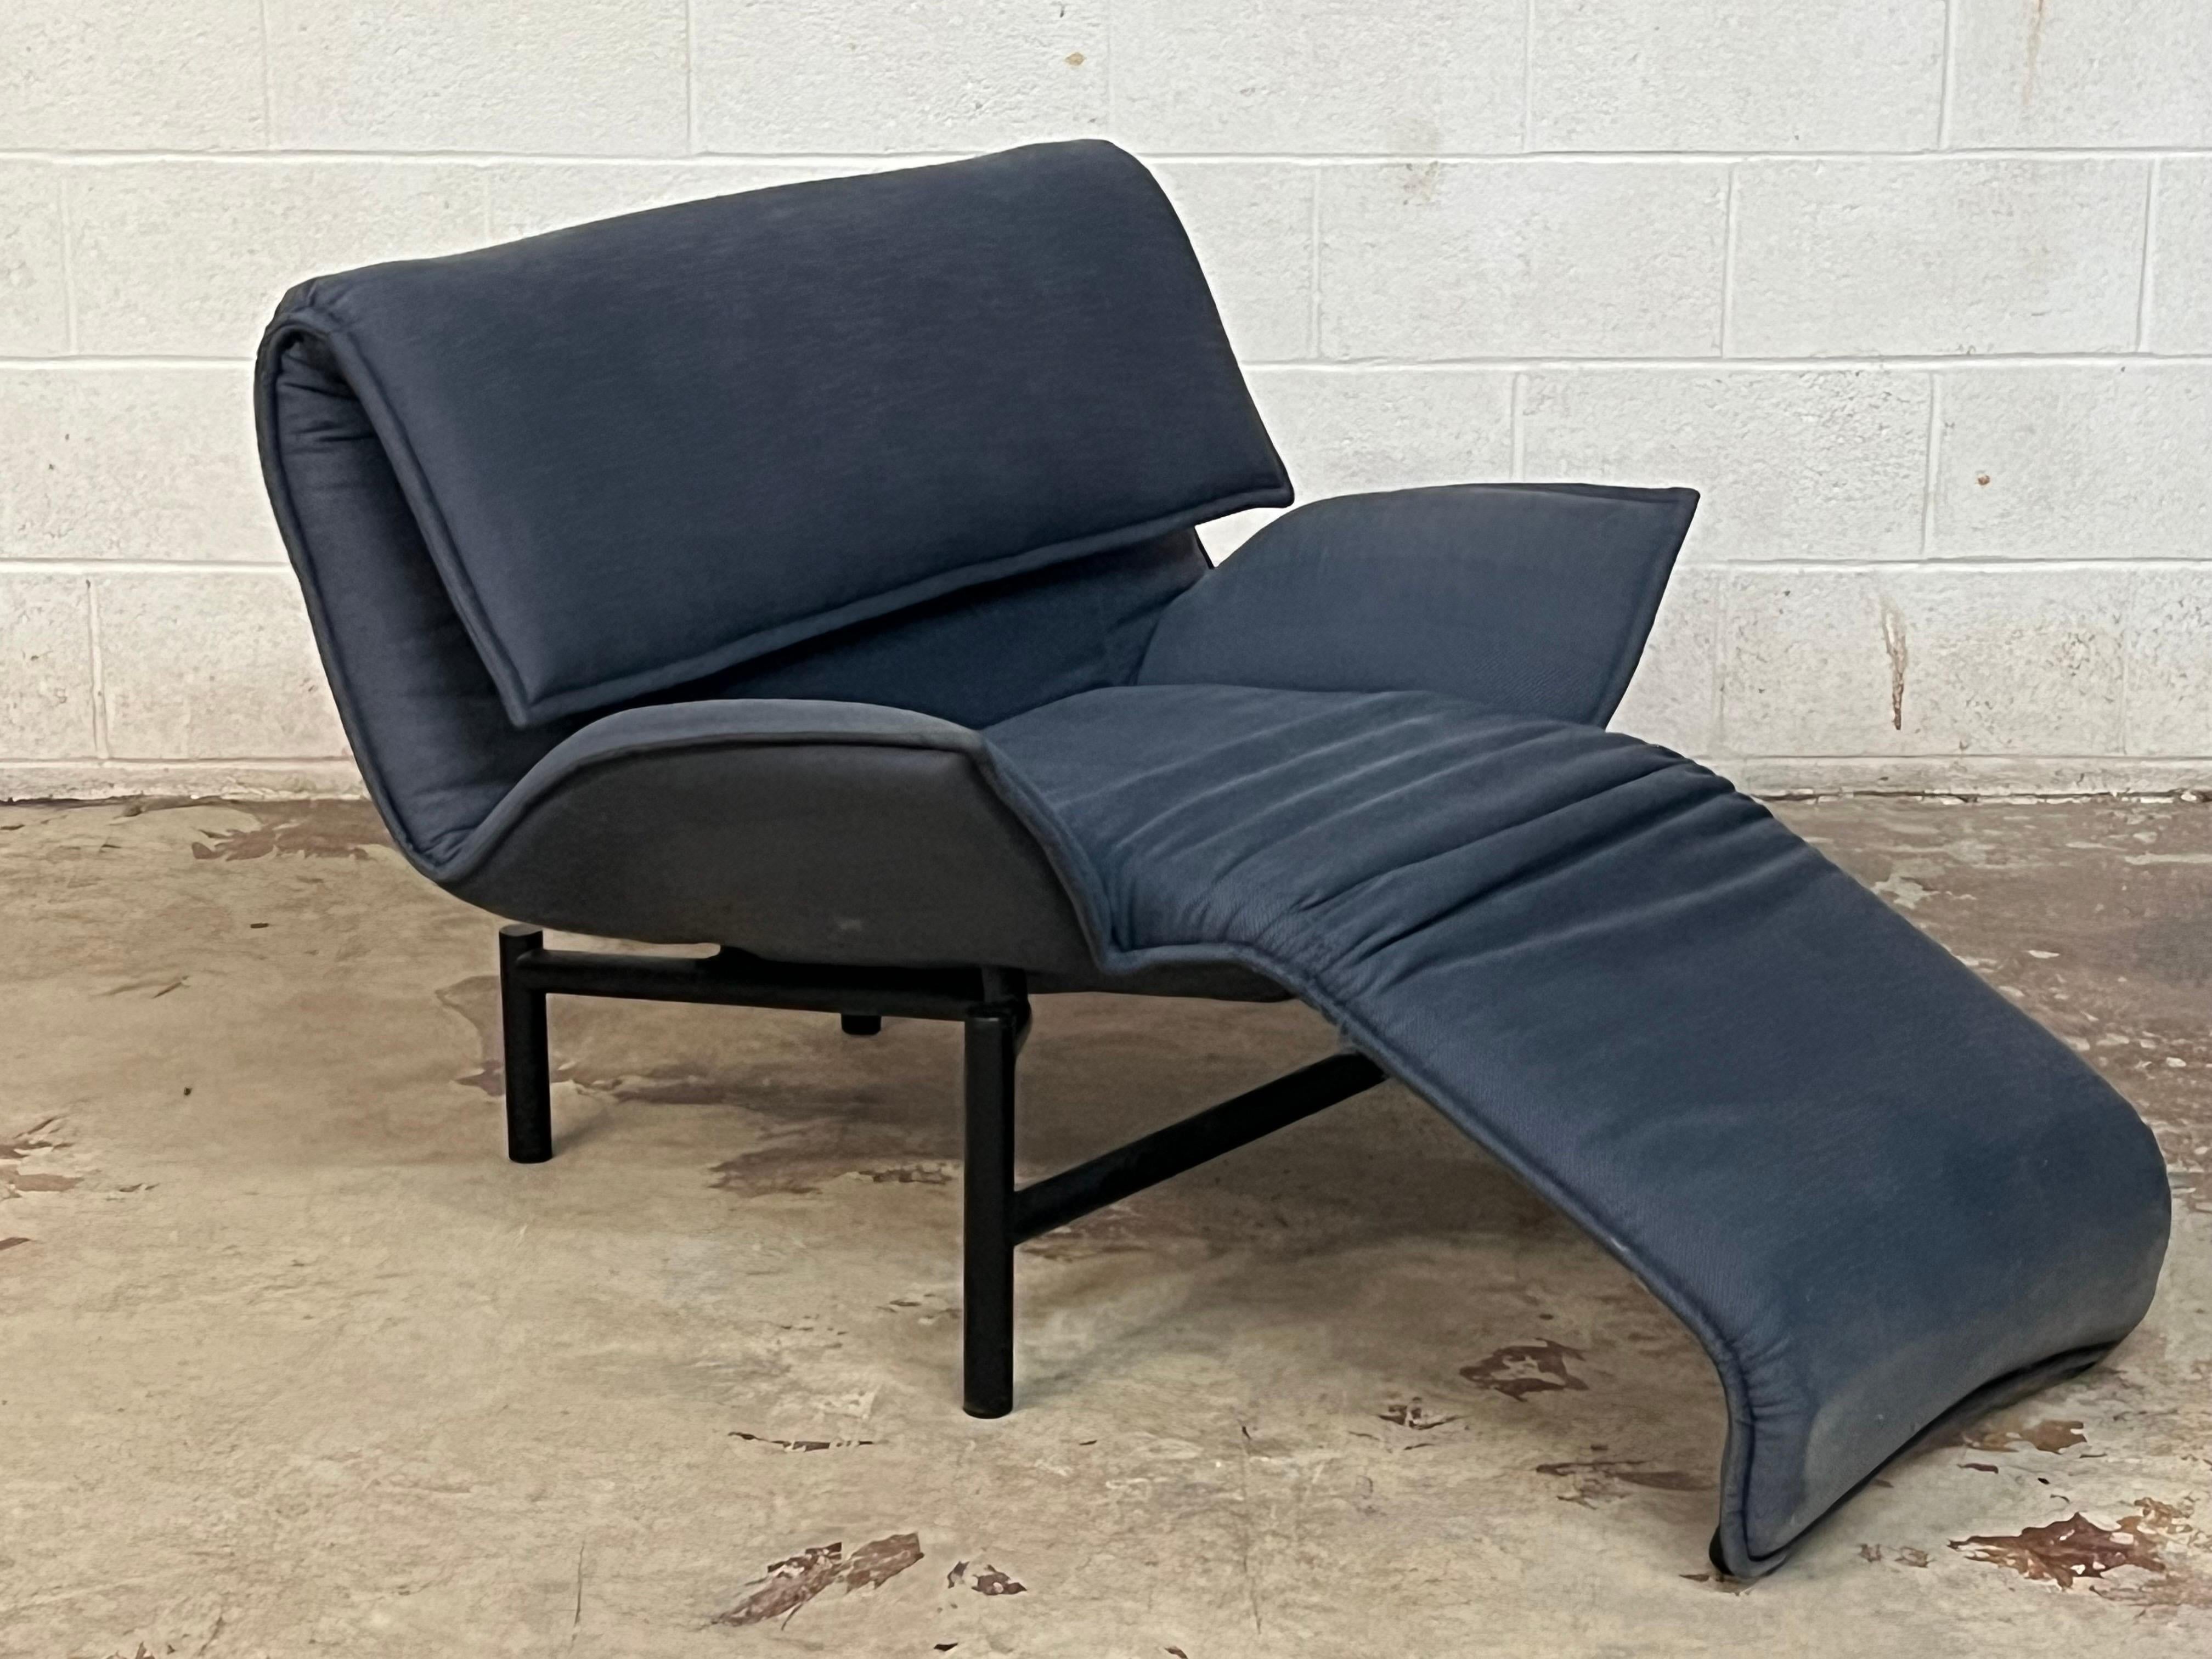 Vico Magistretti “Veranda” Lounge Chair for Cassina, Italy For Sale 10